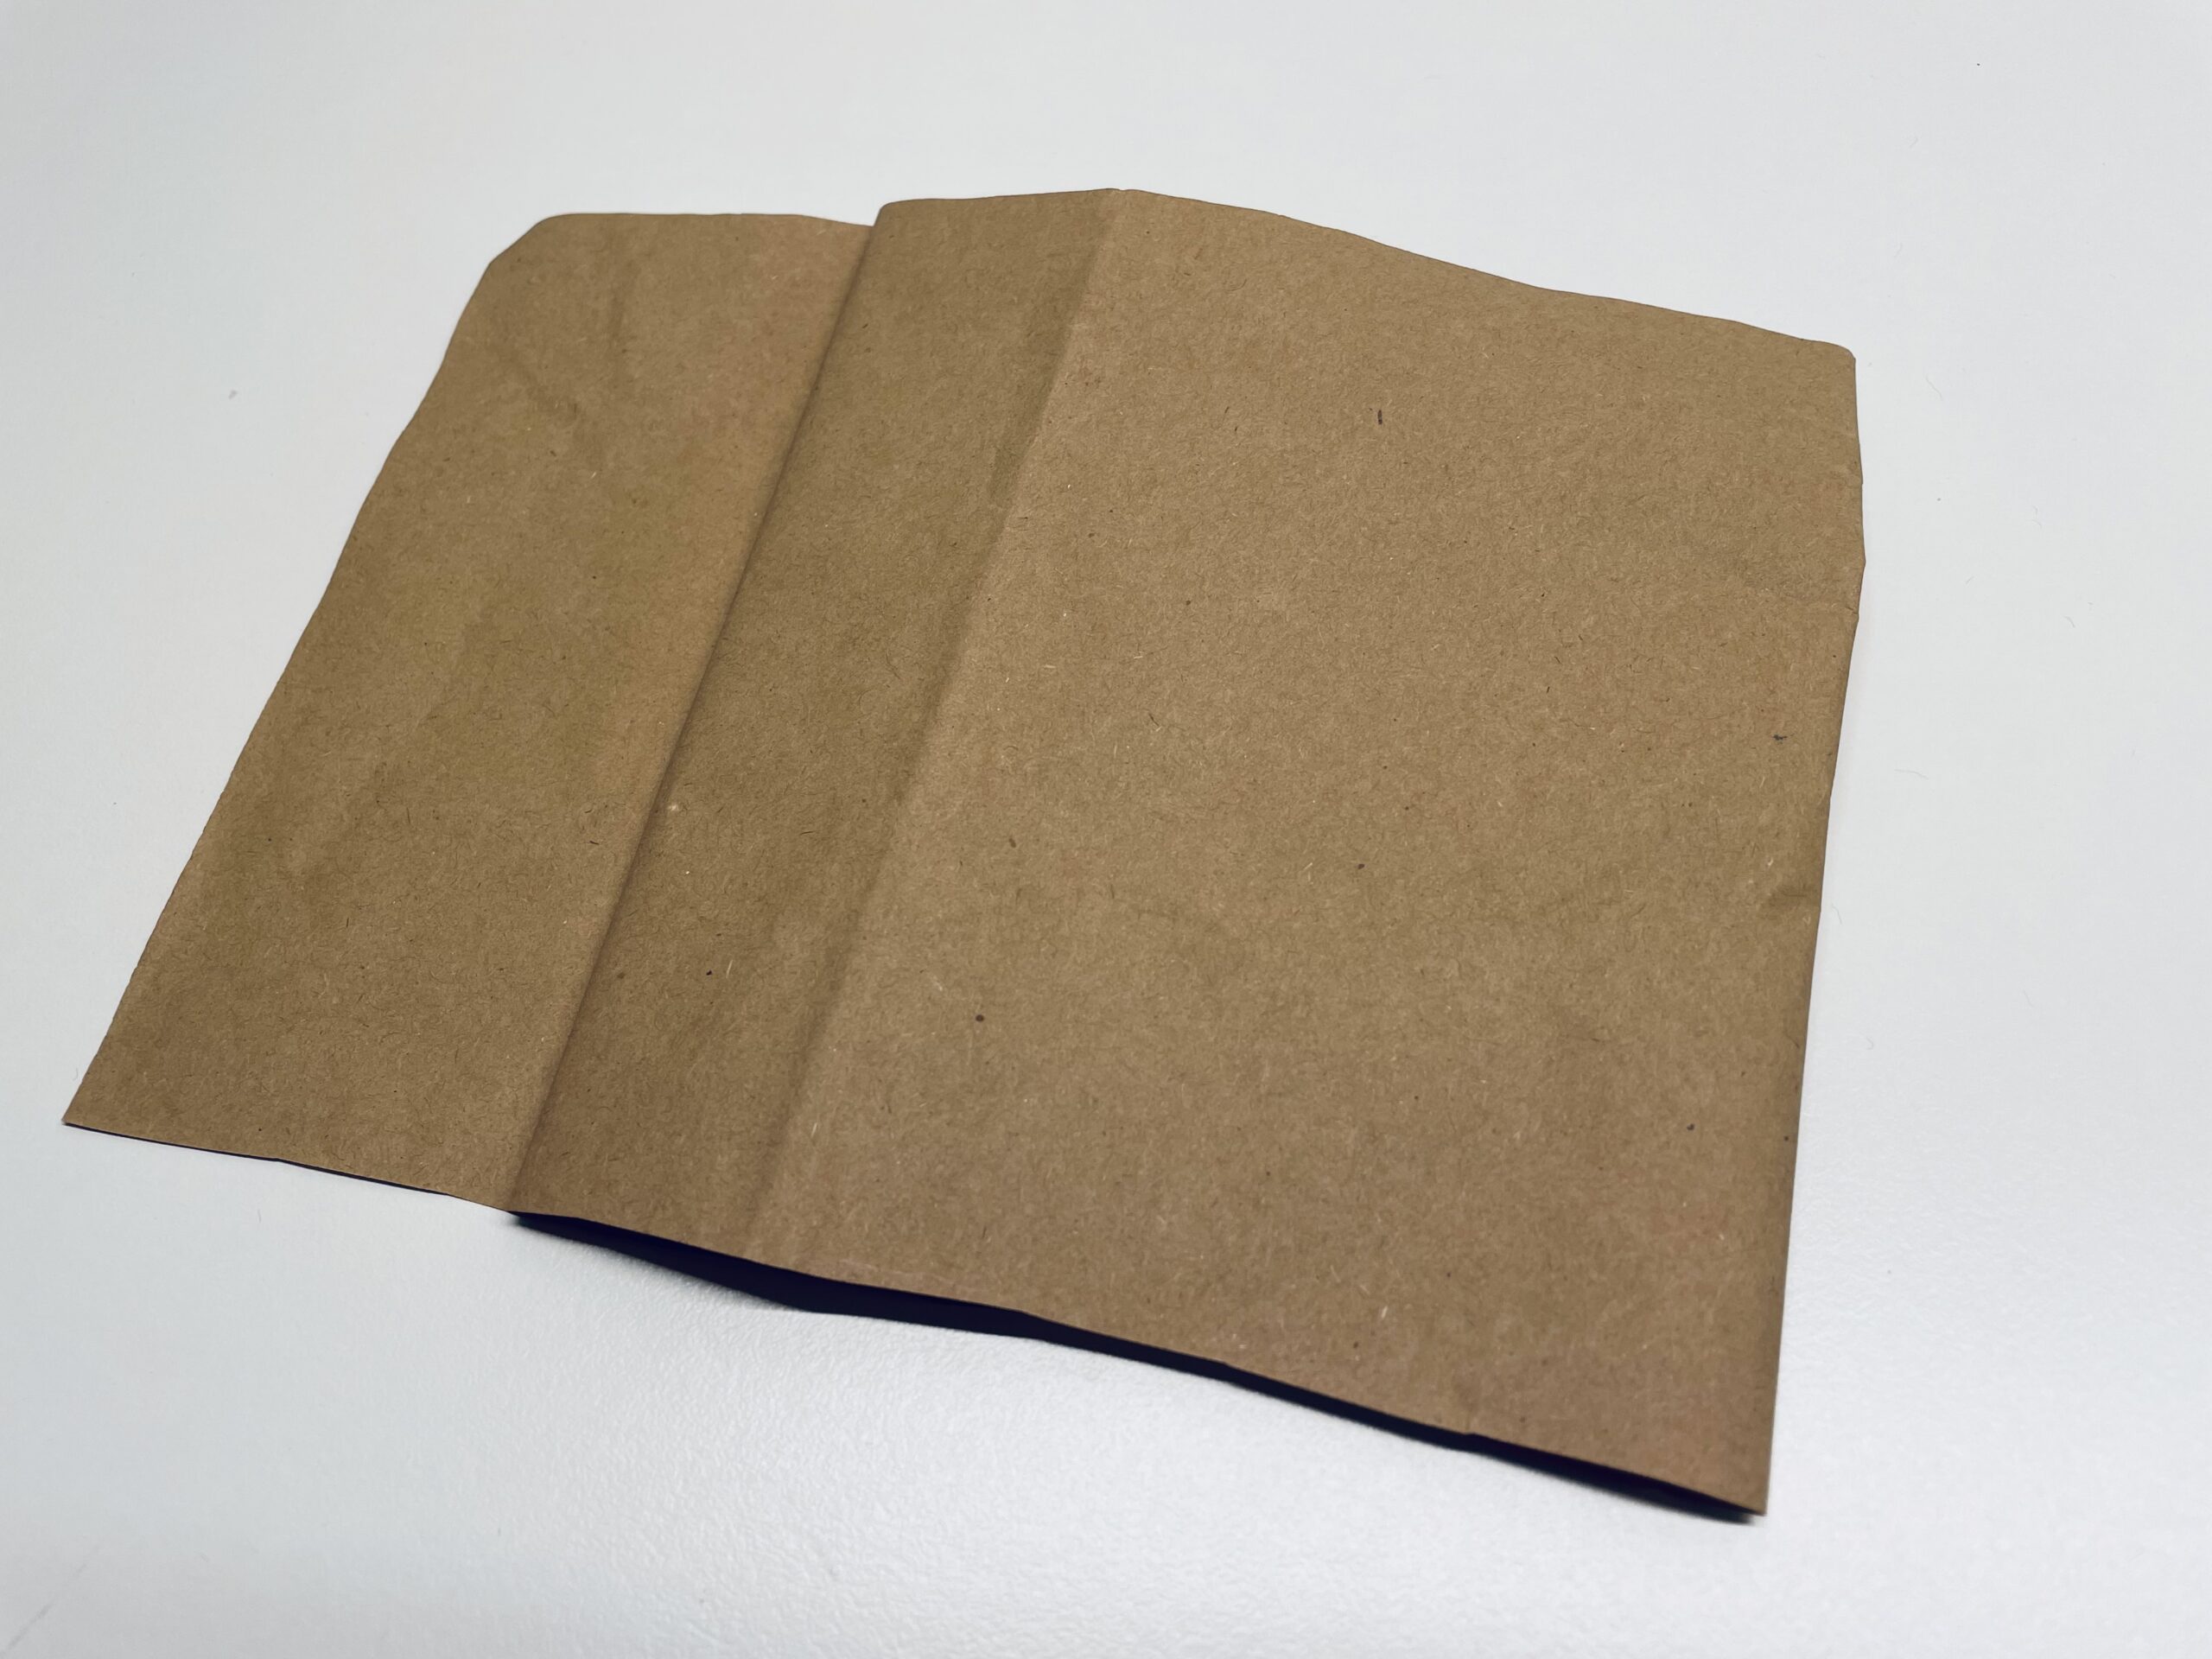 Bild zum Schritt 20 für das Bastel- und DIY-Abenteuer für Kinder: 'Nehmt braunes Tonpapier, alternativ könnt ihr auch braune Verpackungs-Wellpappe verwenden.'